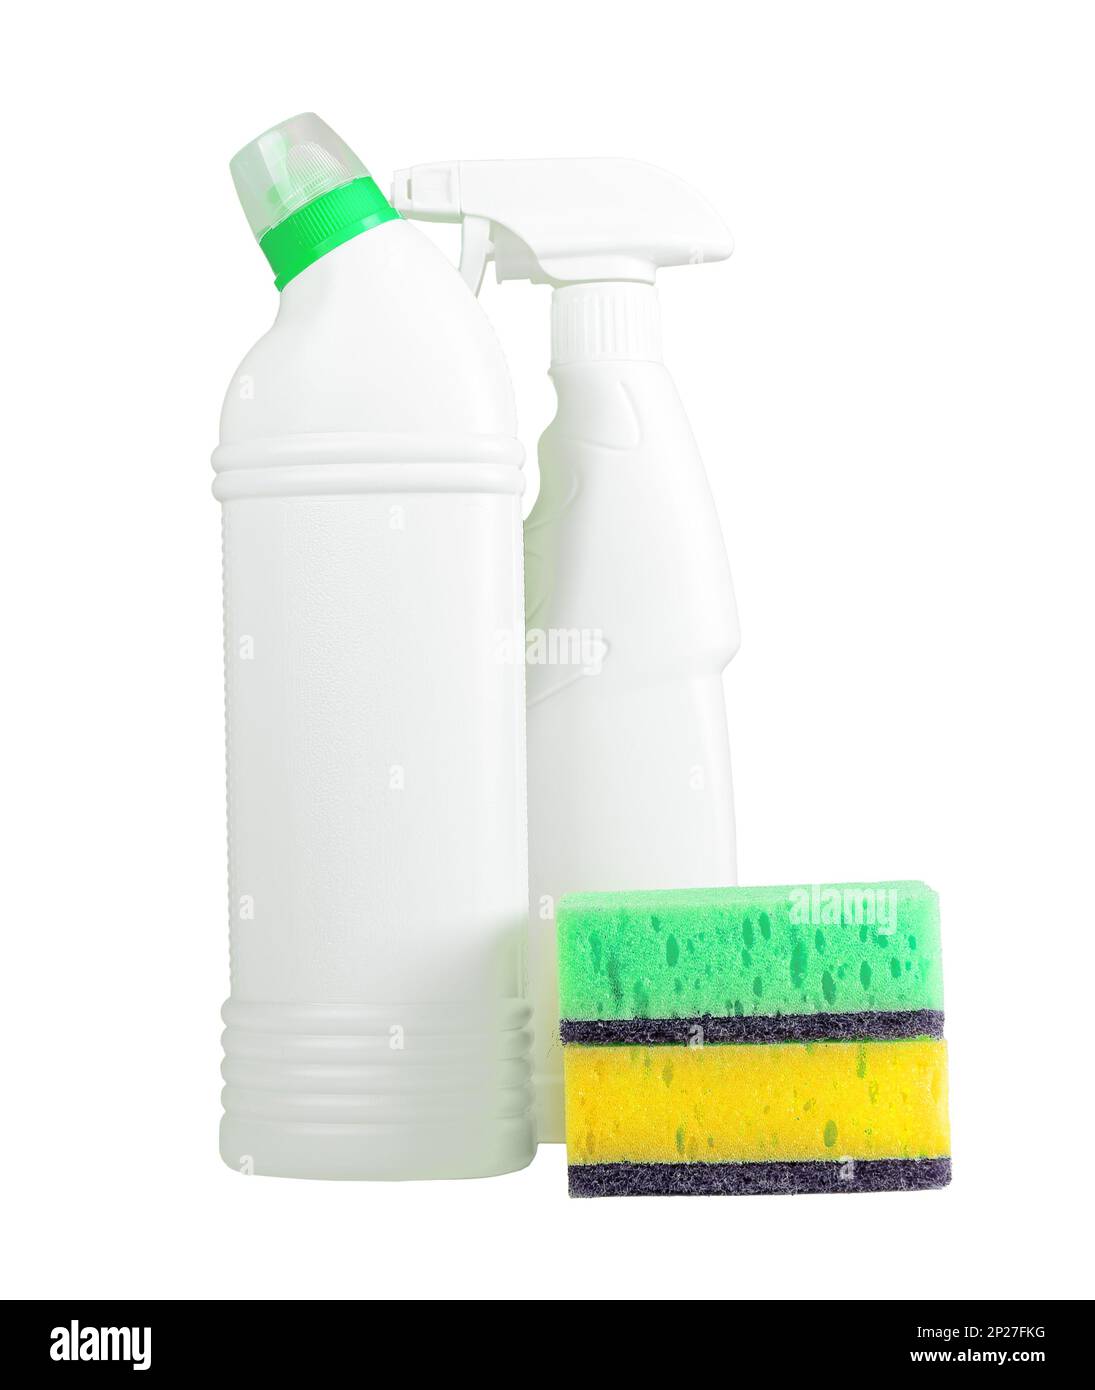 Détergents chimiques de nettoyage, liquides, gels dans des bouteilles en plastique vierges et éponges de lavage isolées sur fond blanc. Banque D'Images